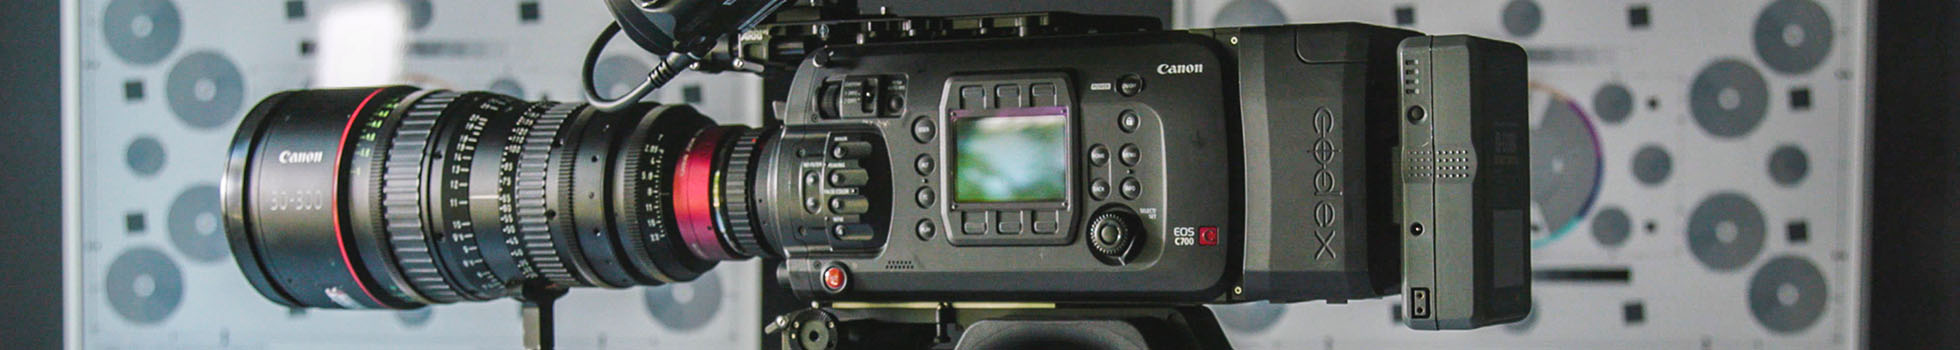 Canon video camera.